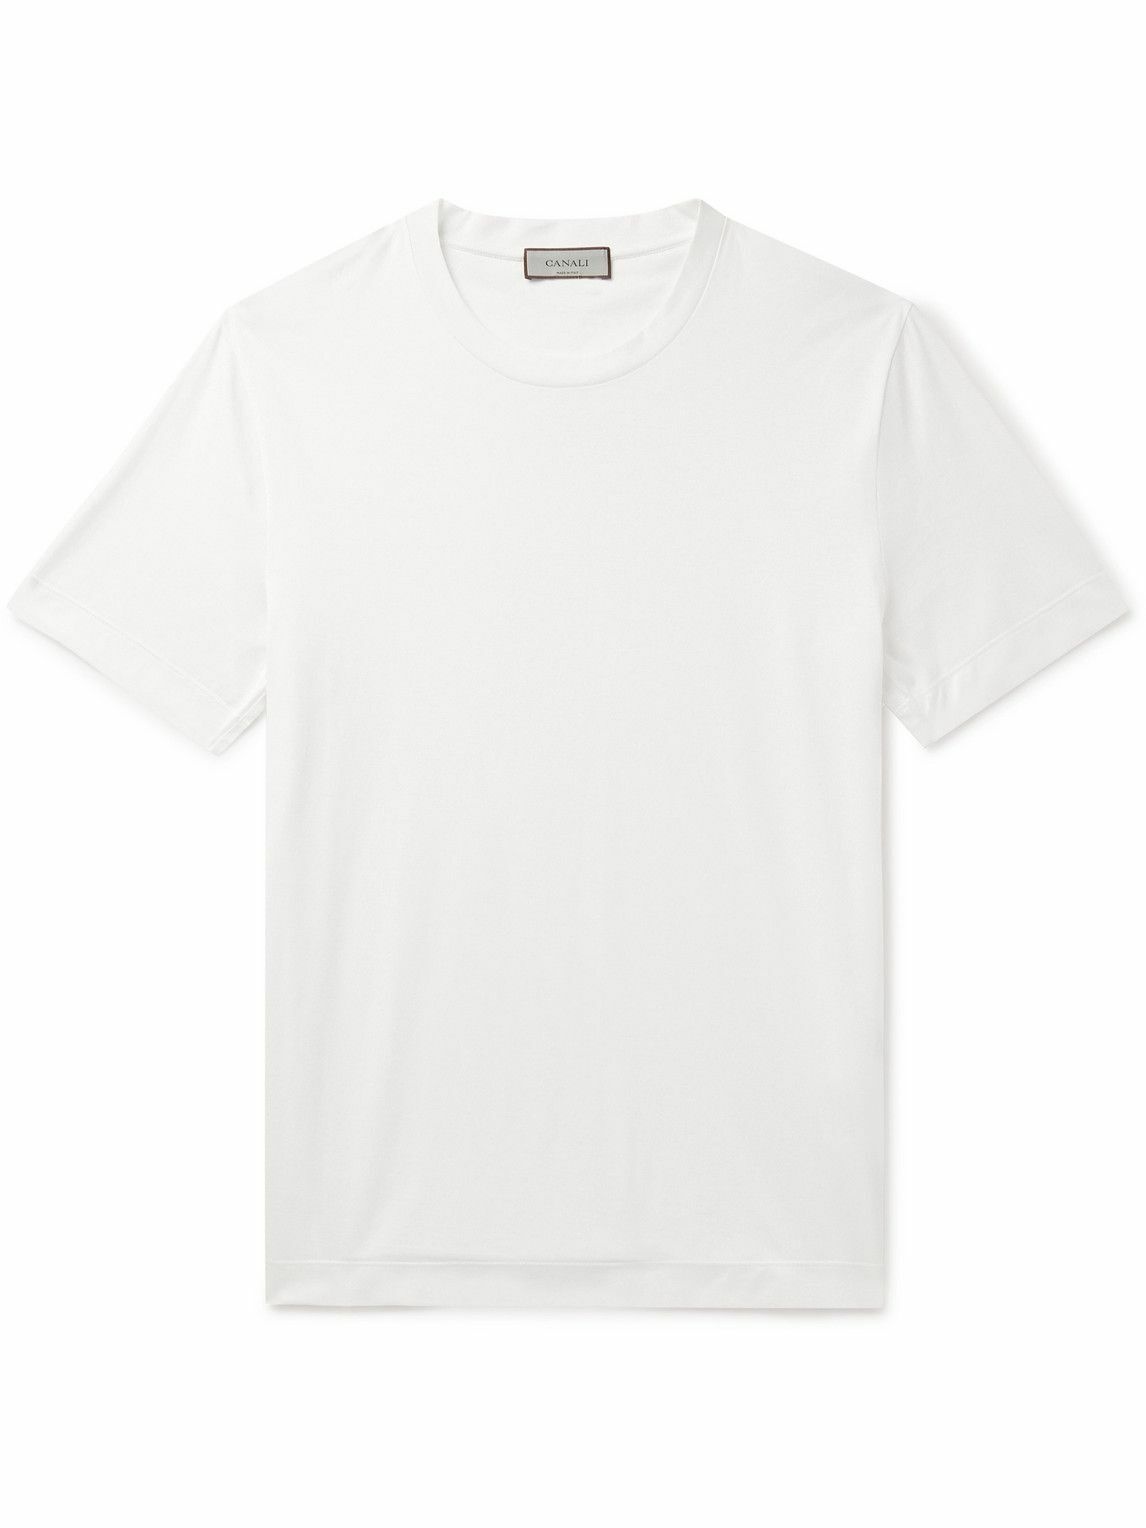 Canali - Cotton-Jersey T-Shirt - White Canali